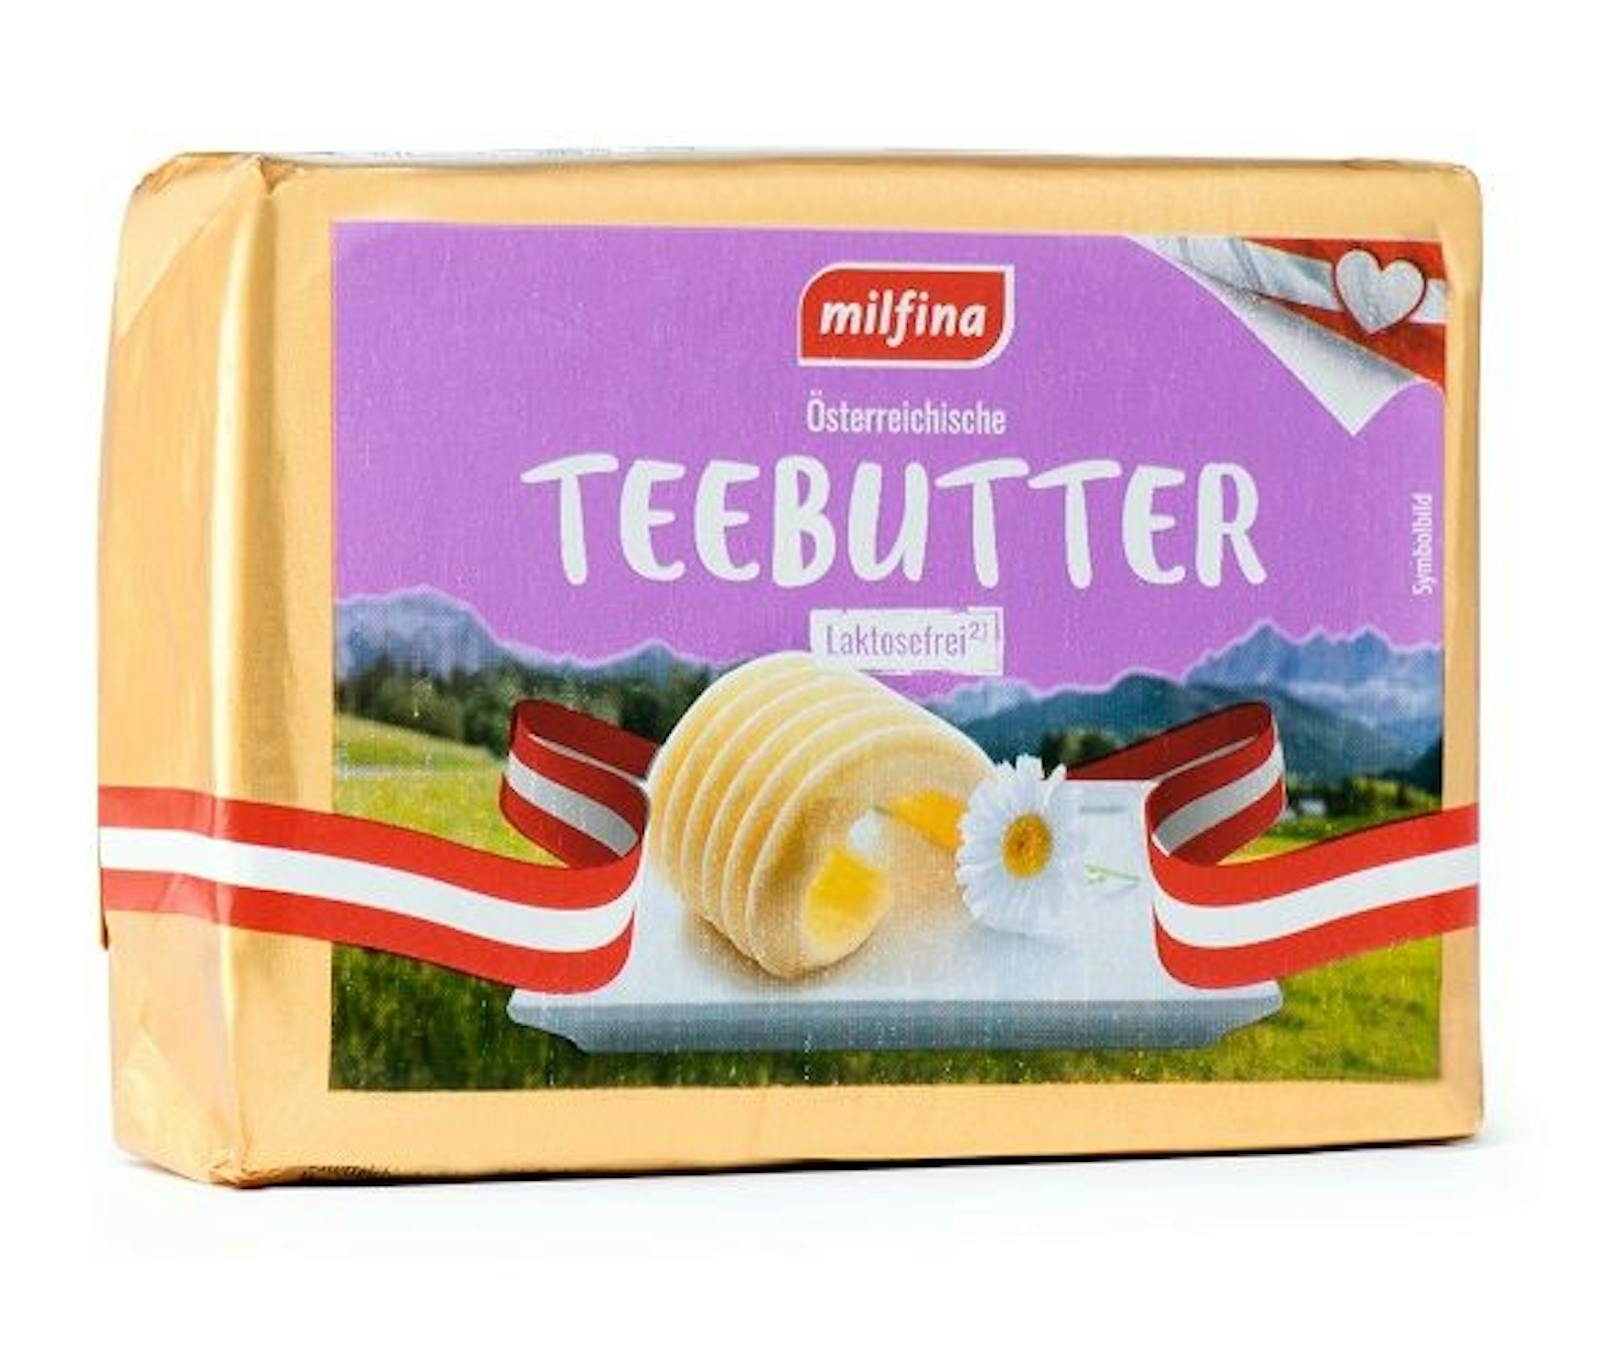 Selbiges bei der MILFINA Laktosefreie Butter, auch diese erlebte einen Preisrutsch von satten 26 % - Kunden finden das Produkt um nur 1,99 Euro im Regal.